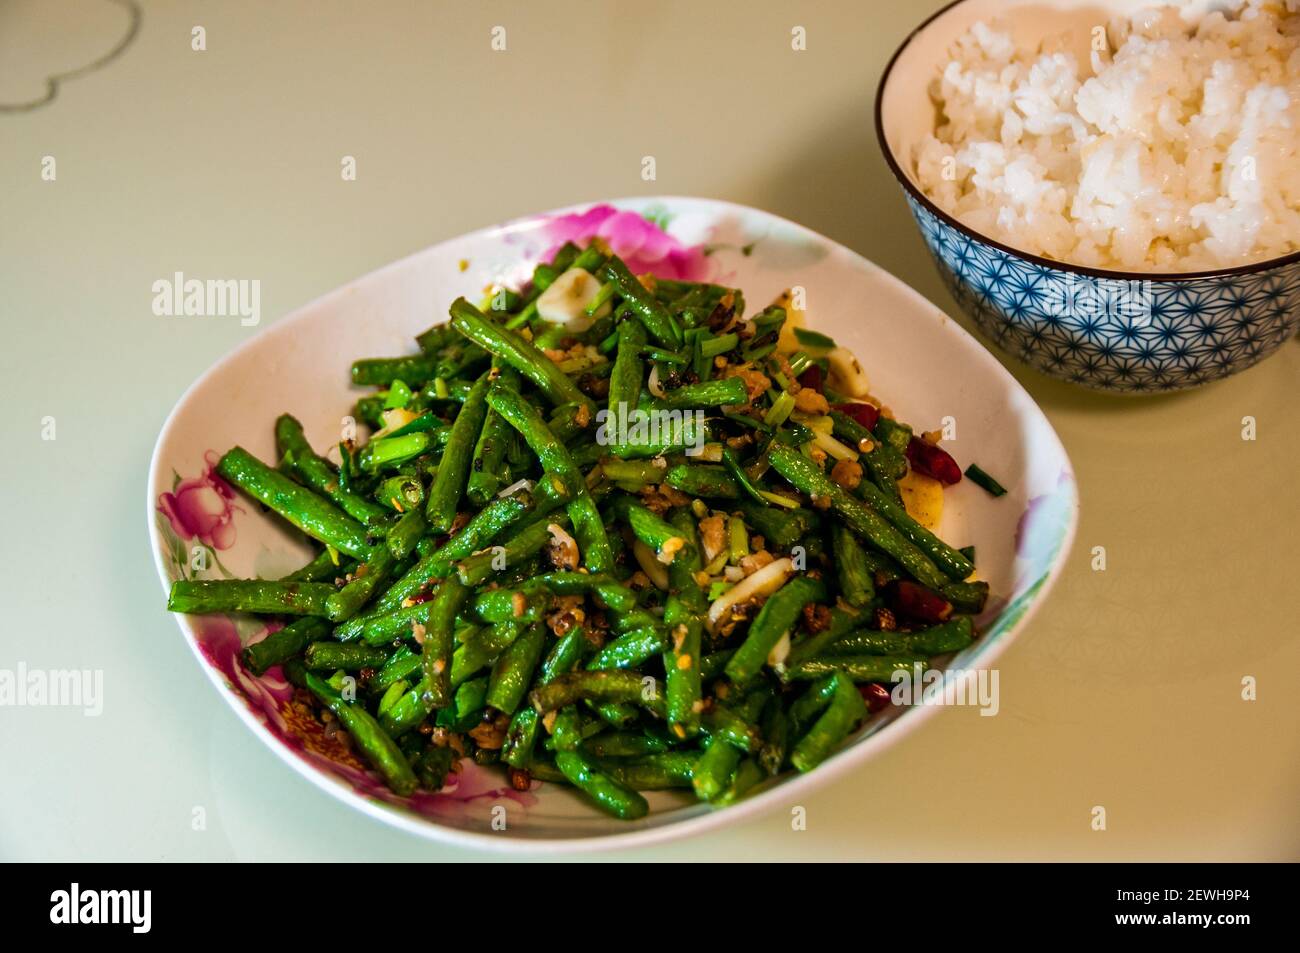 Das Sichuan klassische Gericht aus getrockneten gebratenen Schlangenbohnen, gekocht mit Omipork, einem pflanzlichen Fleischersatz in seiner ‘Hackfleisch’ Form. Stockfoto